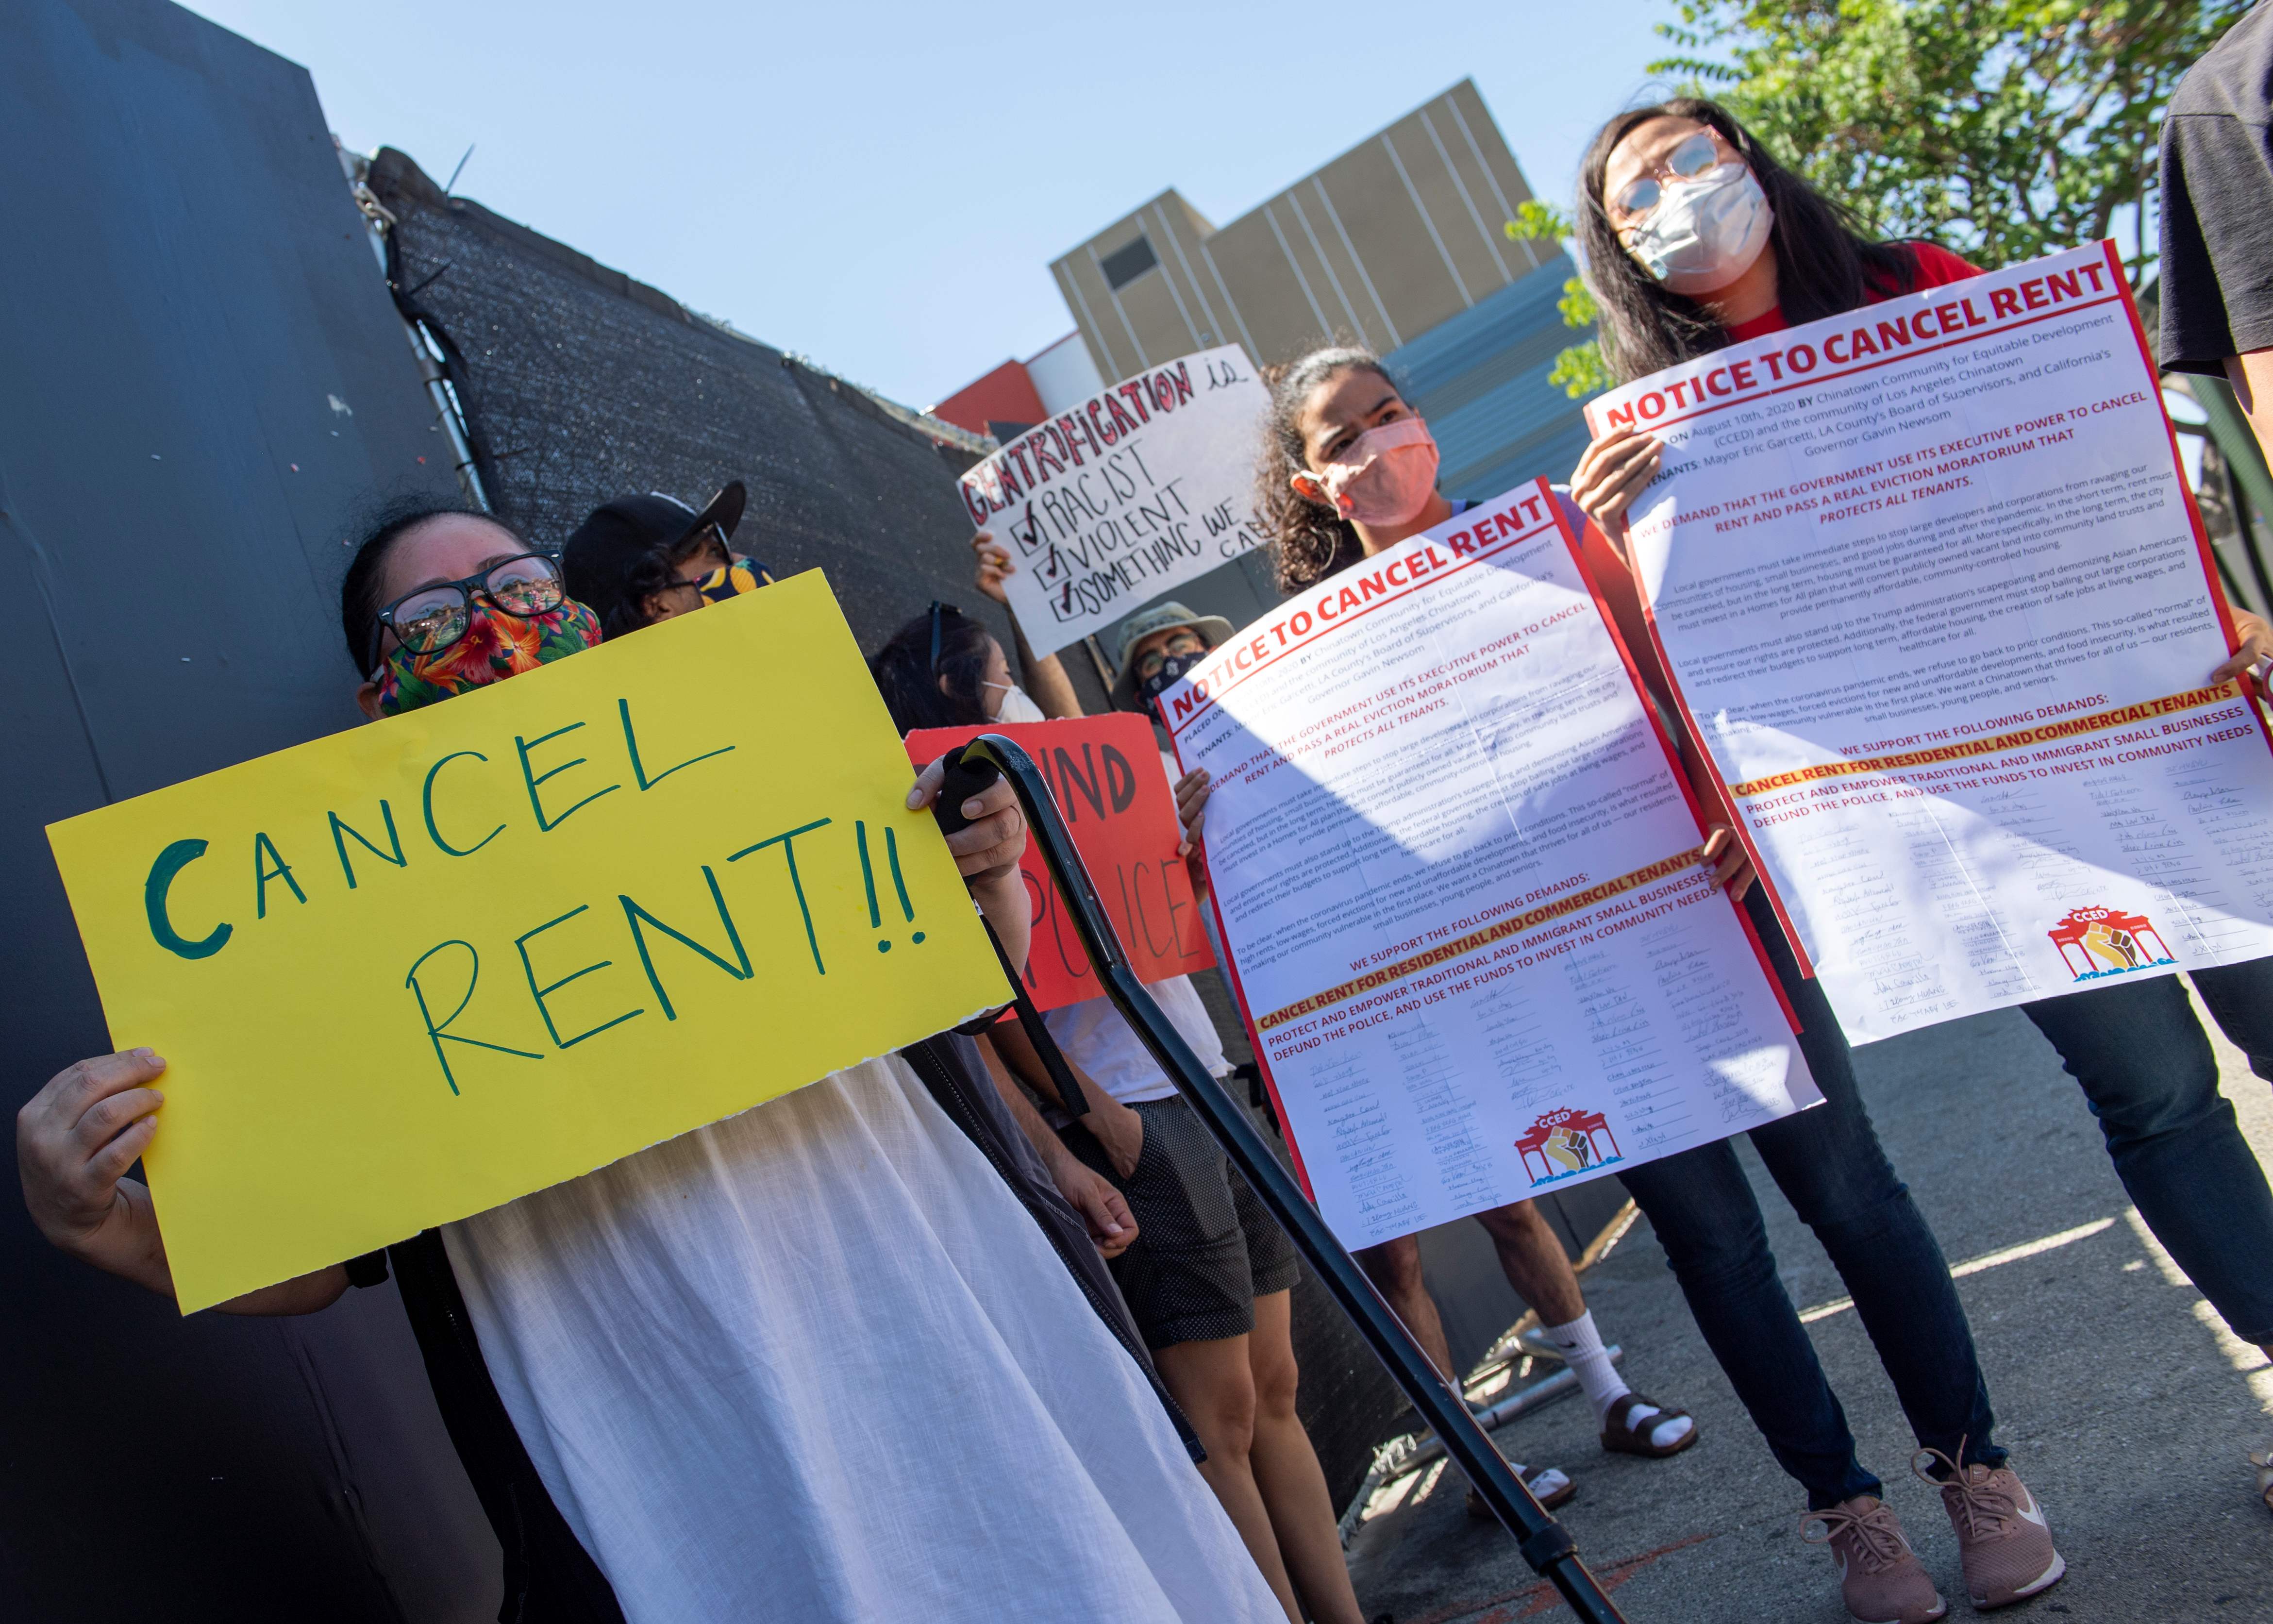 El movimiento “Cancel Rent” (Suspendan los alquileres), está ganando fuerza con protestas y llamados a “huelgas” en todo Estados Unidos. (Foto Prensa Libre: AFP)